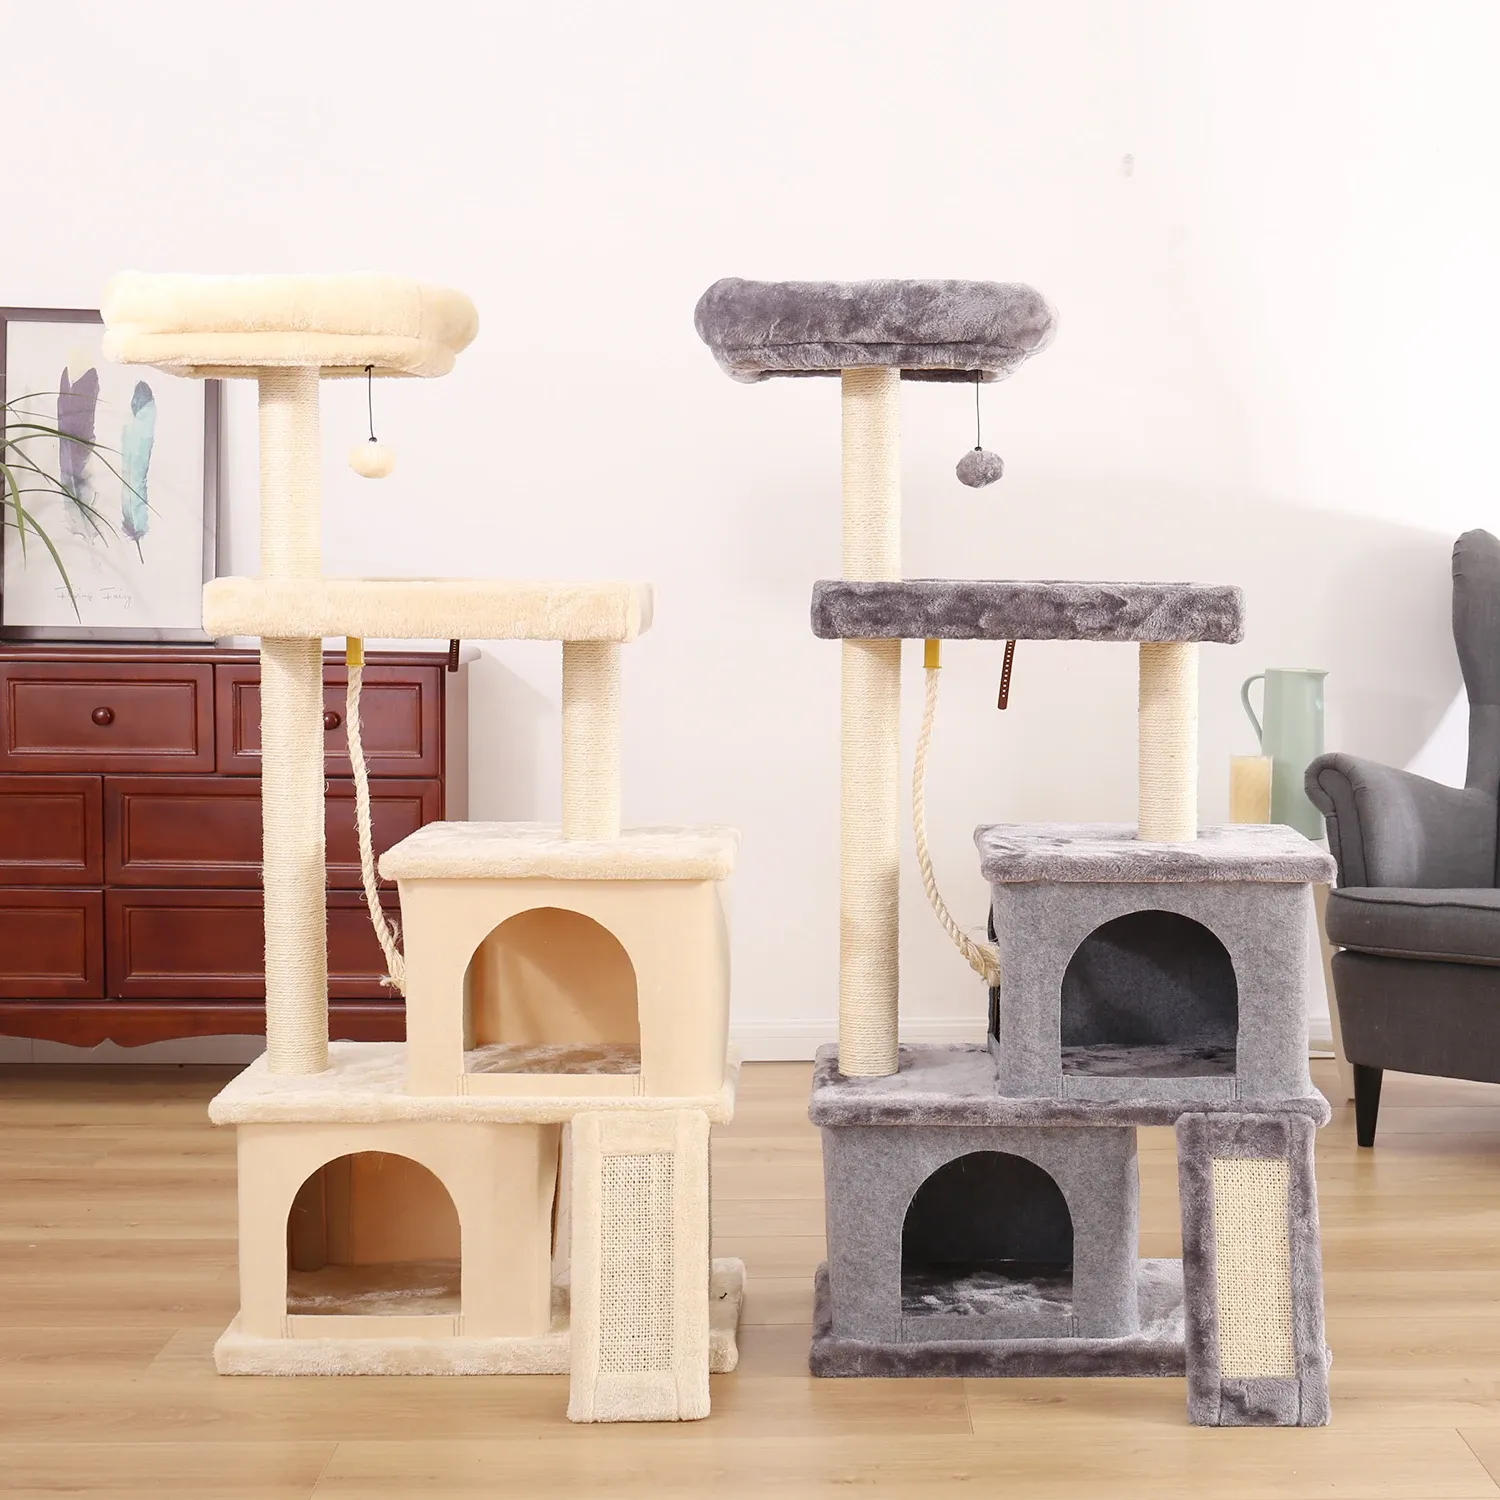 Scratchers Livraison rapide Pet Cat Tree House Condo Multi Level Escalade Stratching Post pour chat chaton jouant balle chat sautant activité jouet